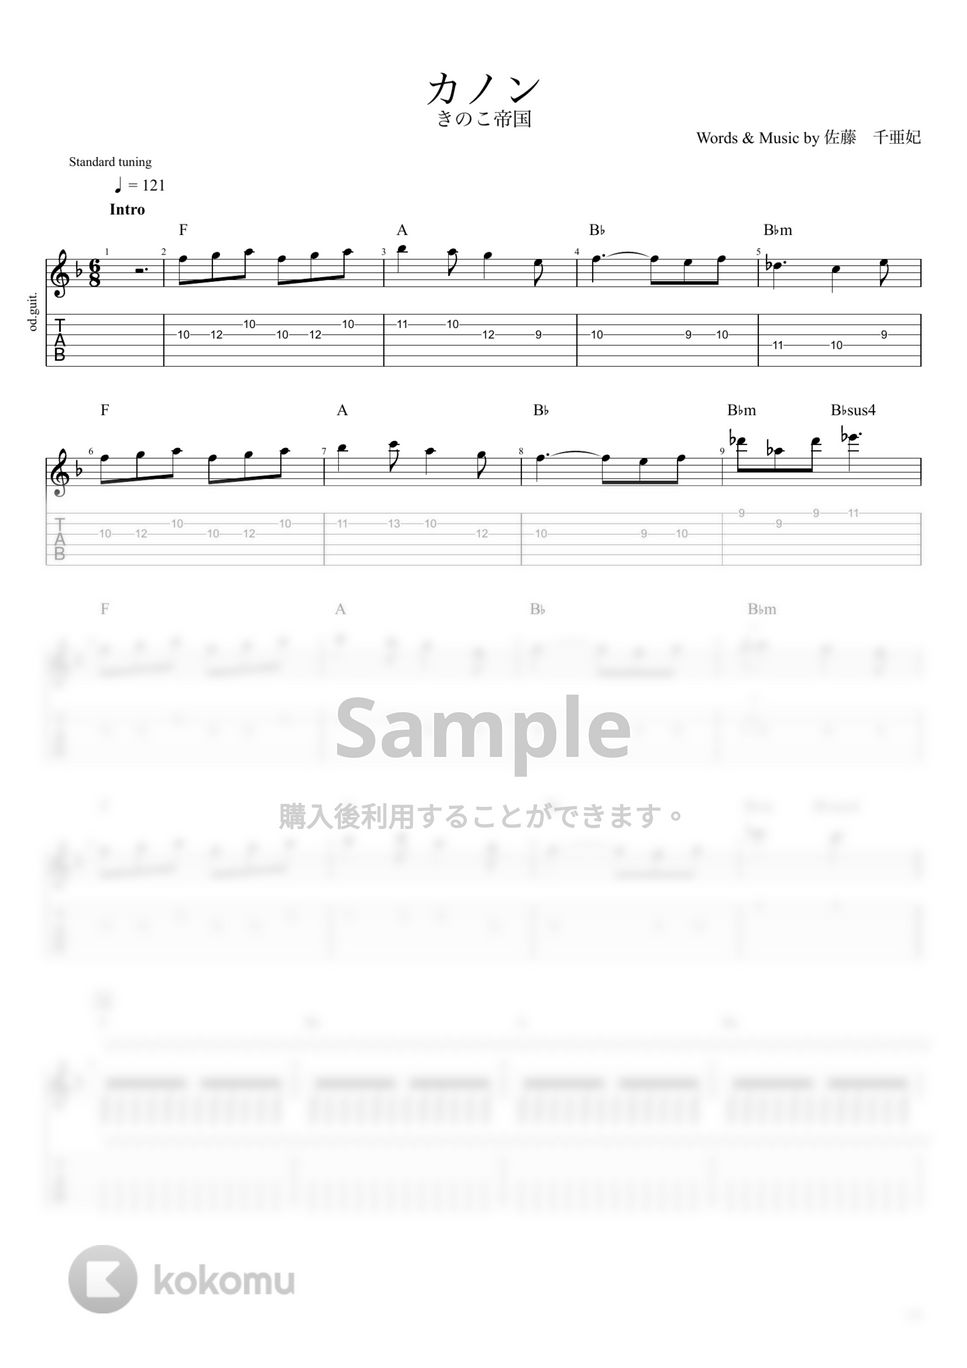 きのこ帝国 - カノン (ギター) by うつみ